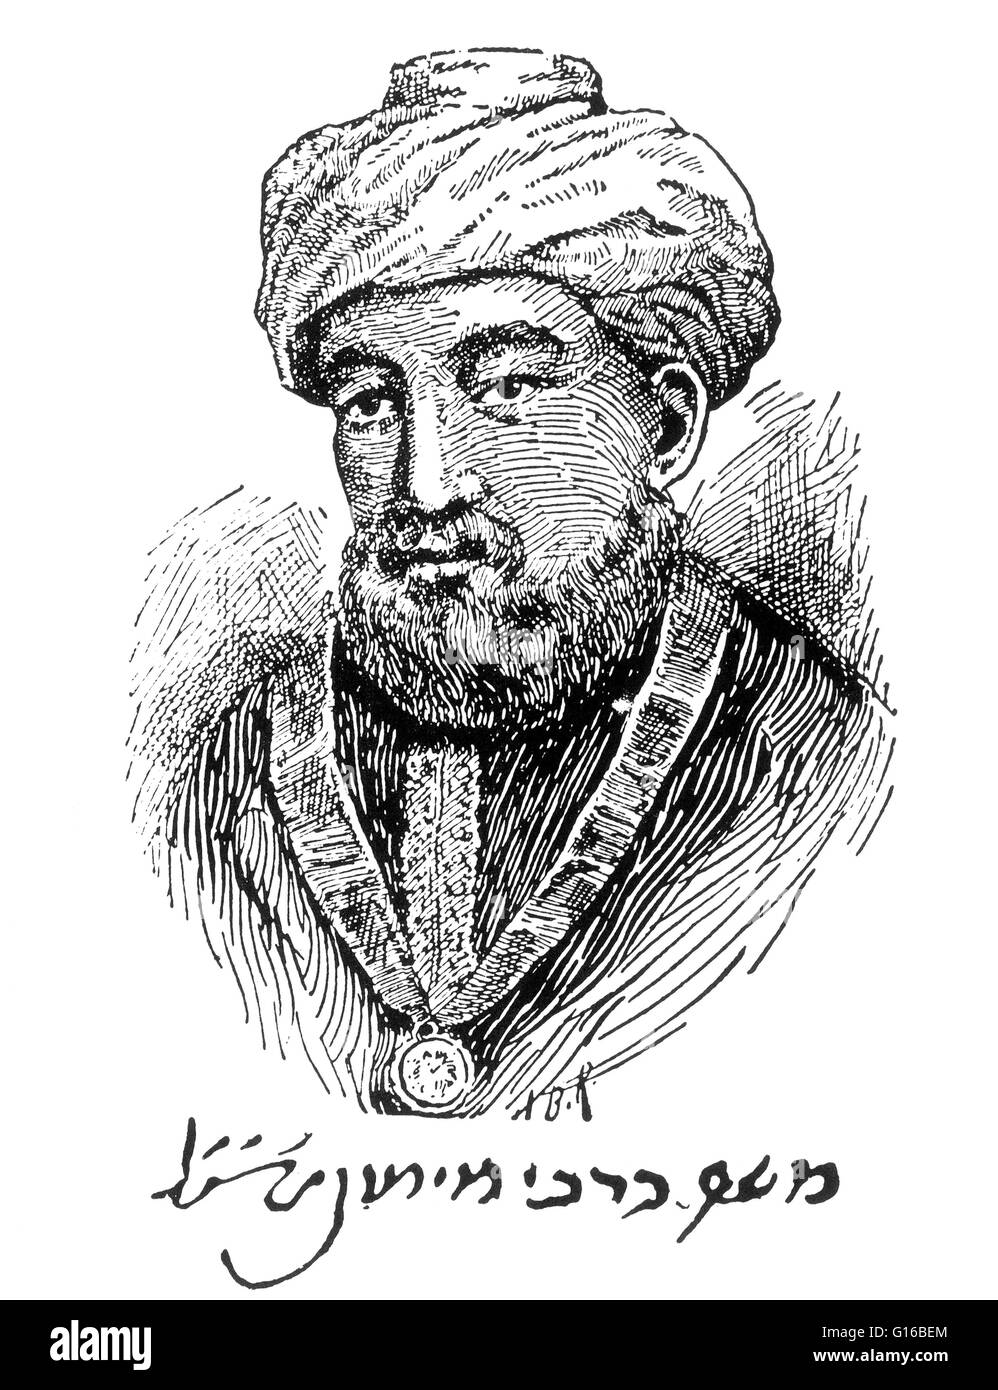 Bildunterschrift: "graviert Porträt des Maimonides, wie er glaubte, mit Autogramm im Faksimile aussehen." Mosheh Ben Maimon (1135 - 12 Dezember 1204) war eine herausragende mittelalterliche spanische, sephardischen jüdischen Philosophen, Astronomen und eines der produktivsten ein Stockfoto